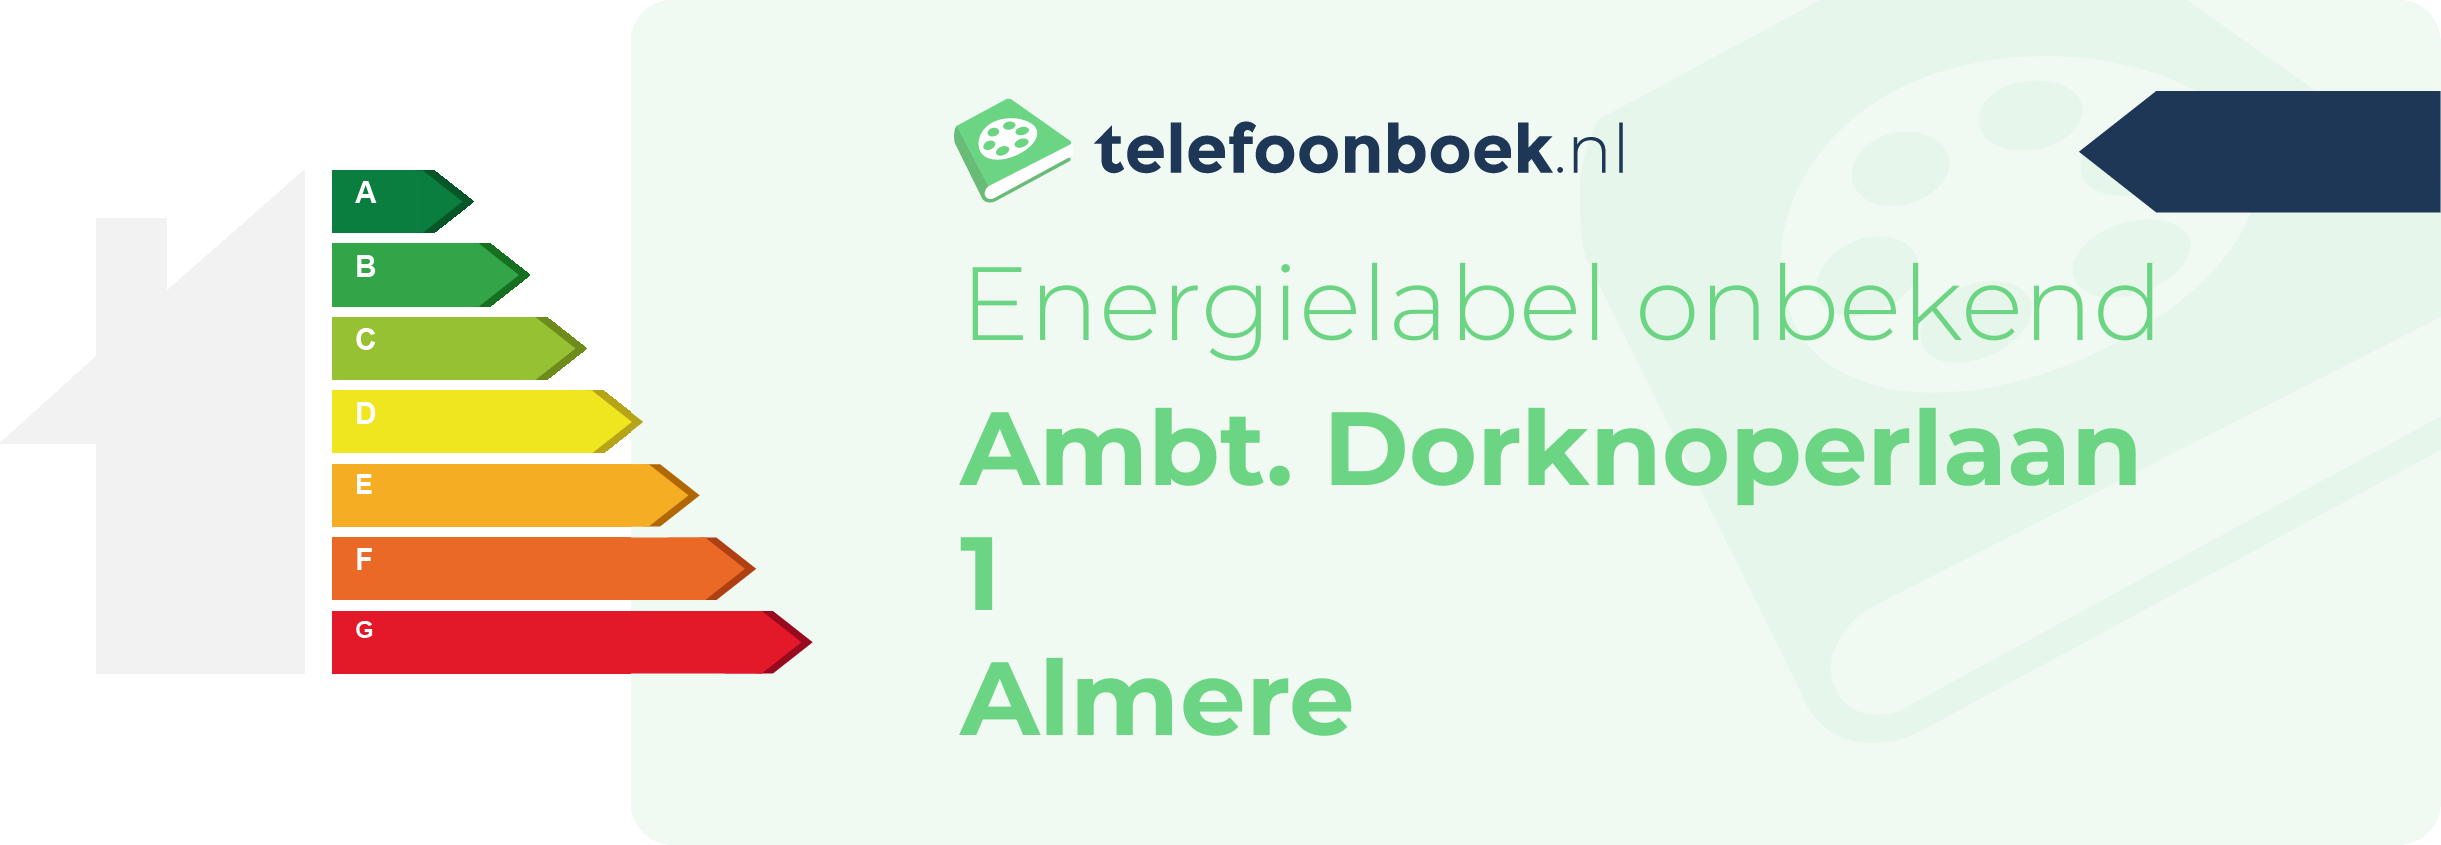 Energielabel Ambt. Dorknoperlaan 1 Almere